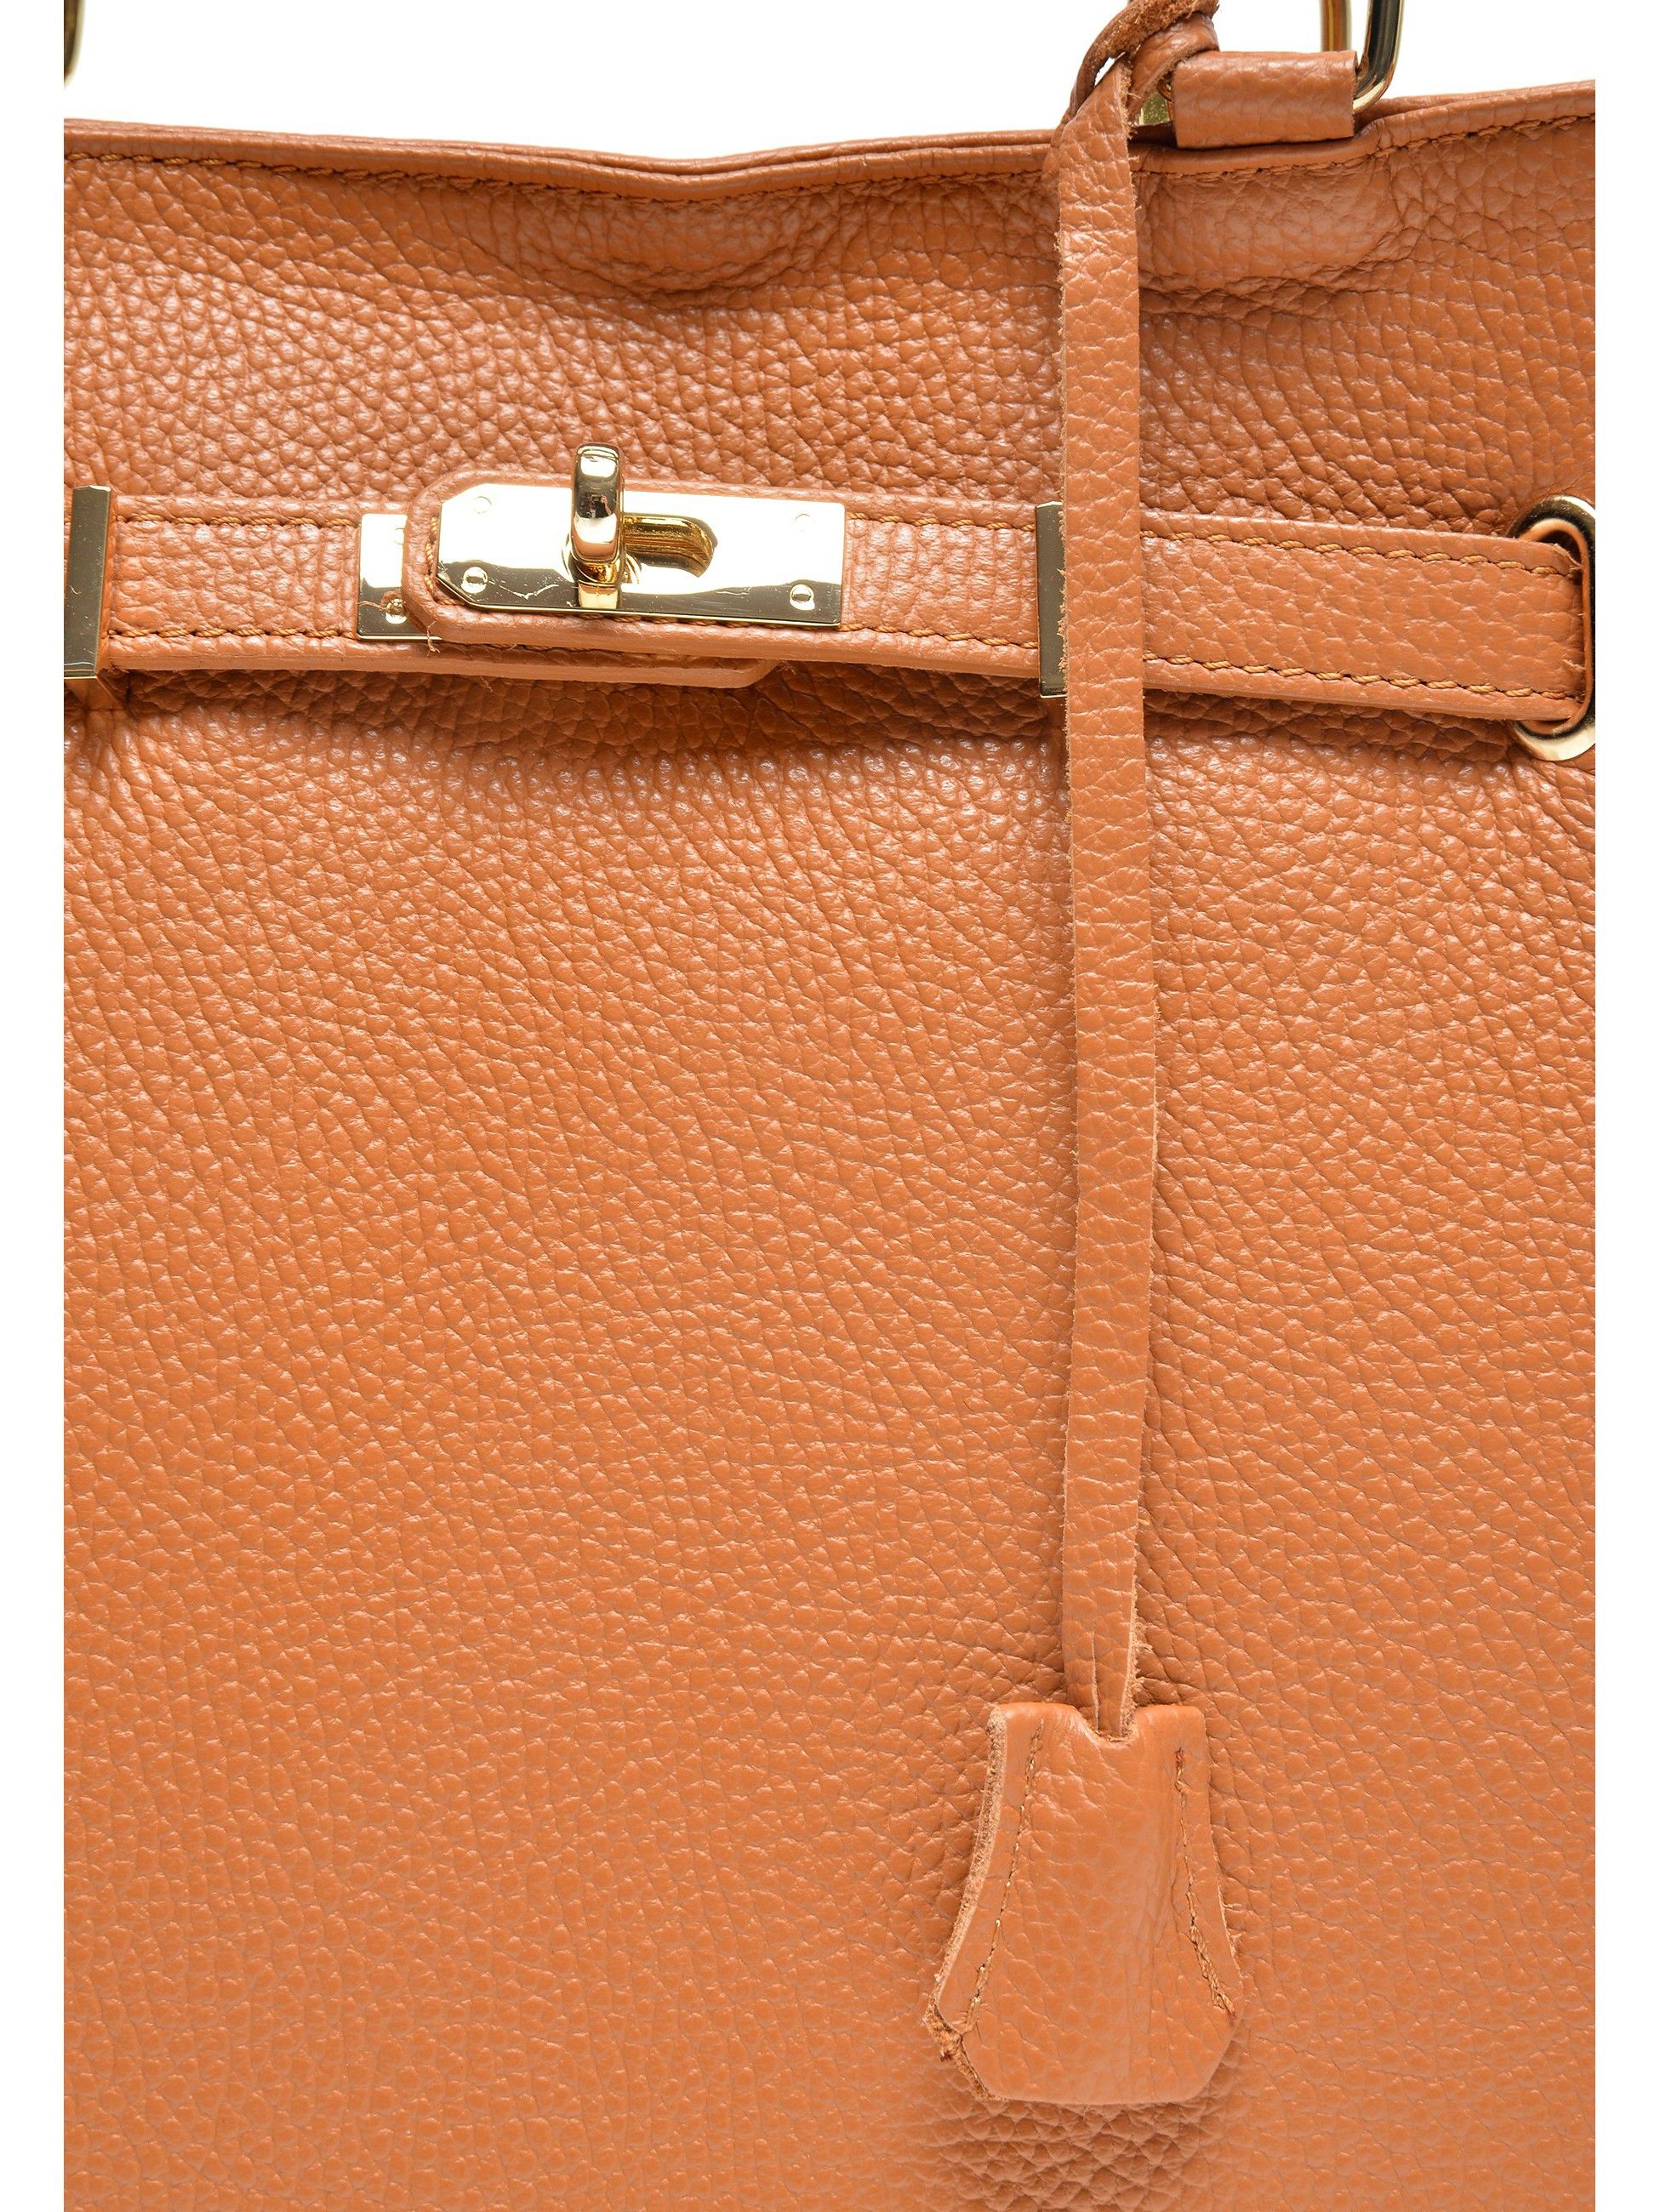 Handbag
100% cow leather
Top zip closure
Buckle detail
Inner zip pocket
Dimensions (L): 28.5x38x18 cm
Handle: 34 cm
Shoulder strap: 100 cm fix